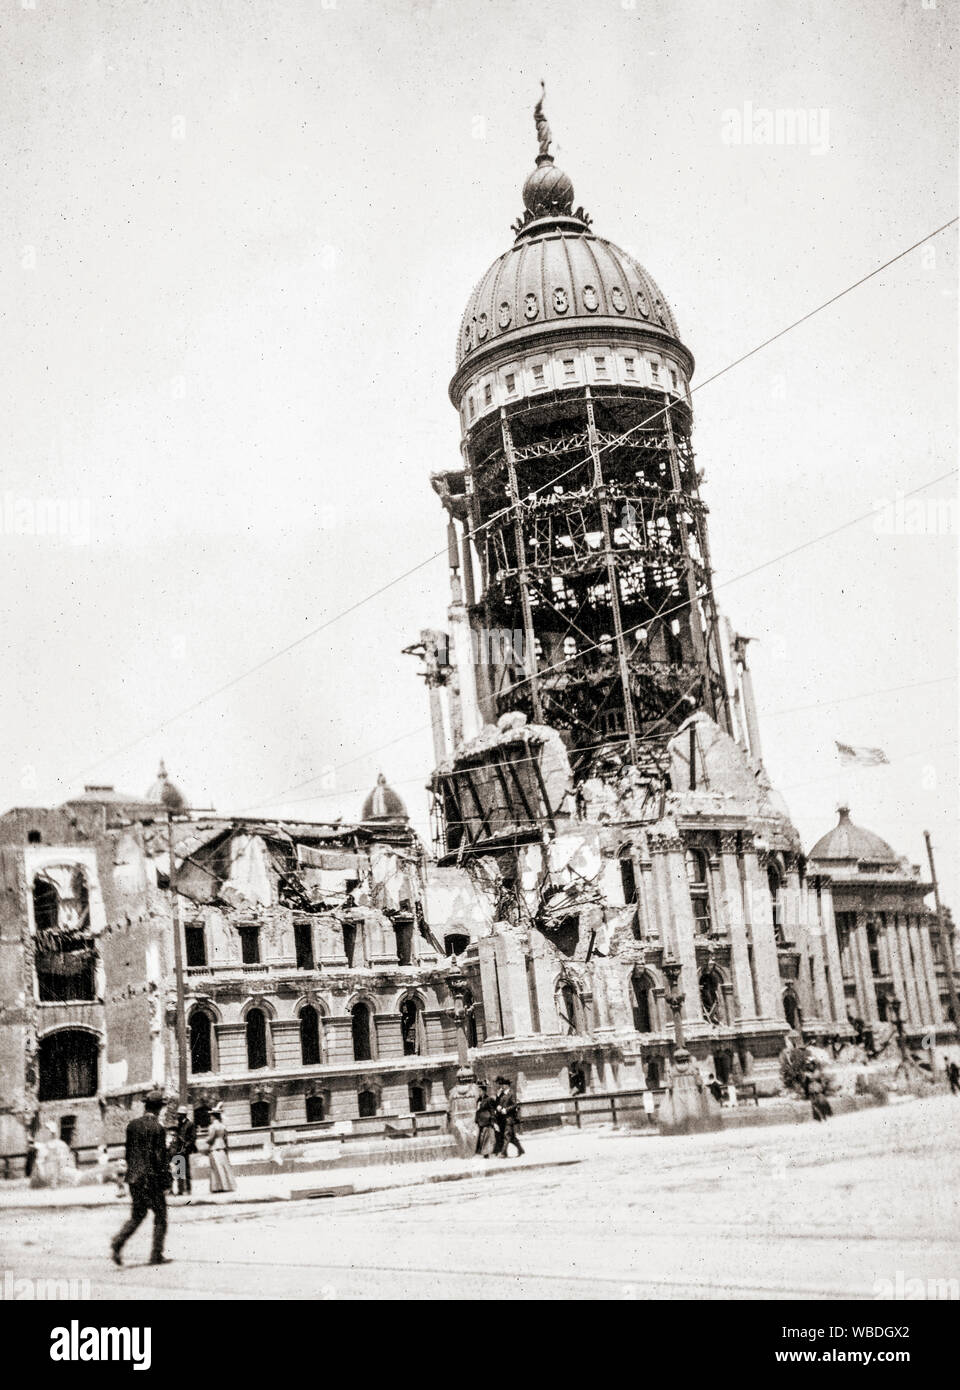 San Francisco City Hall nach dem Erdbeben vom 18. April 1906. San Francisco, Kalifornien, Vereinigte Staaten von Amerika. Nach einem photogaph von Dolph Kessler, 1884-1945. Stockfoto